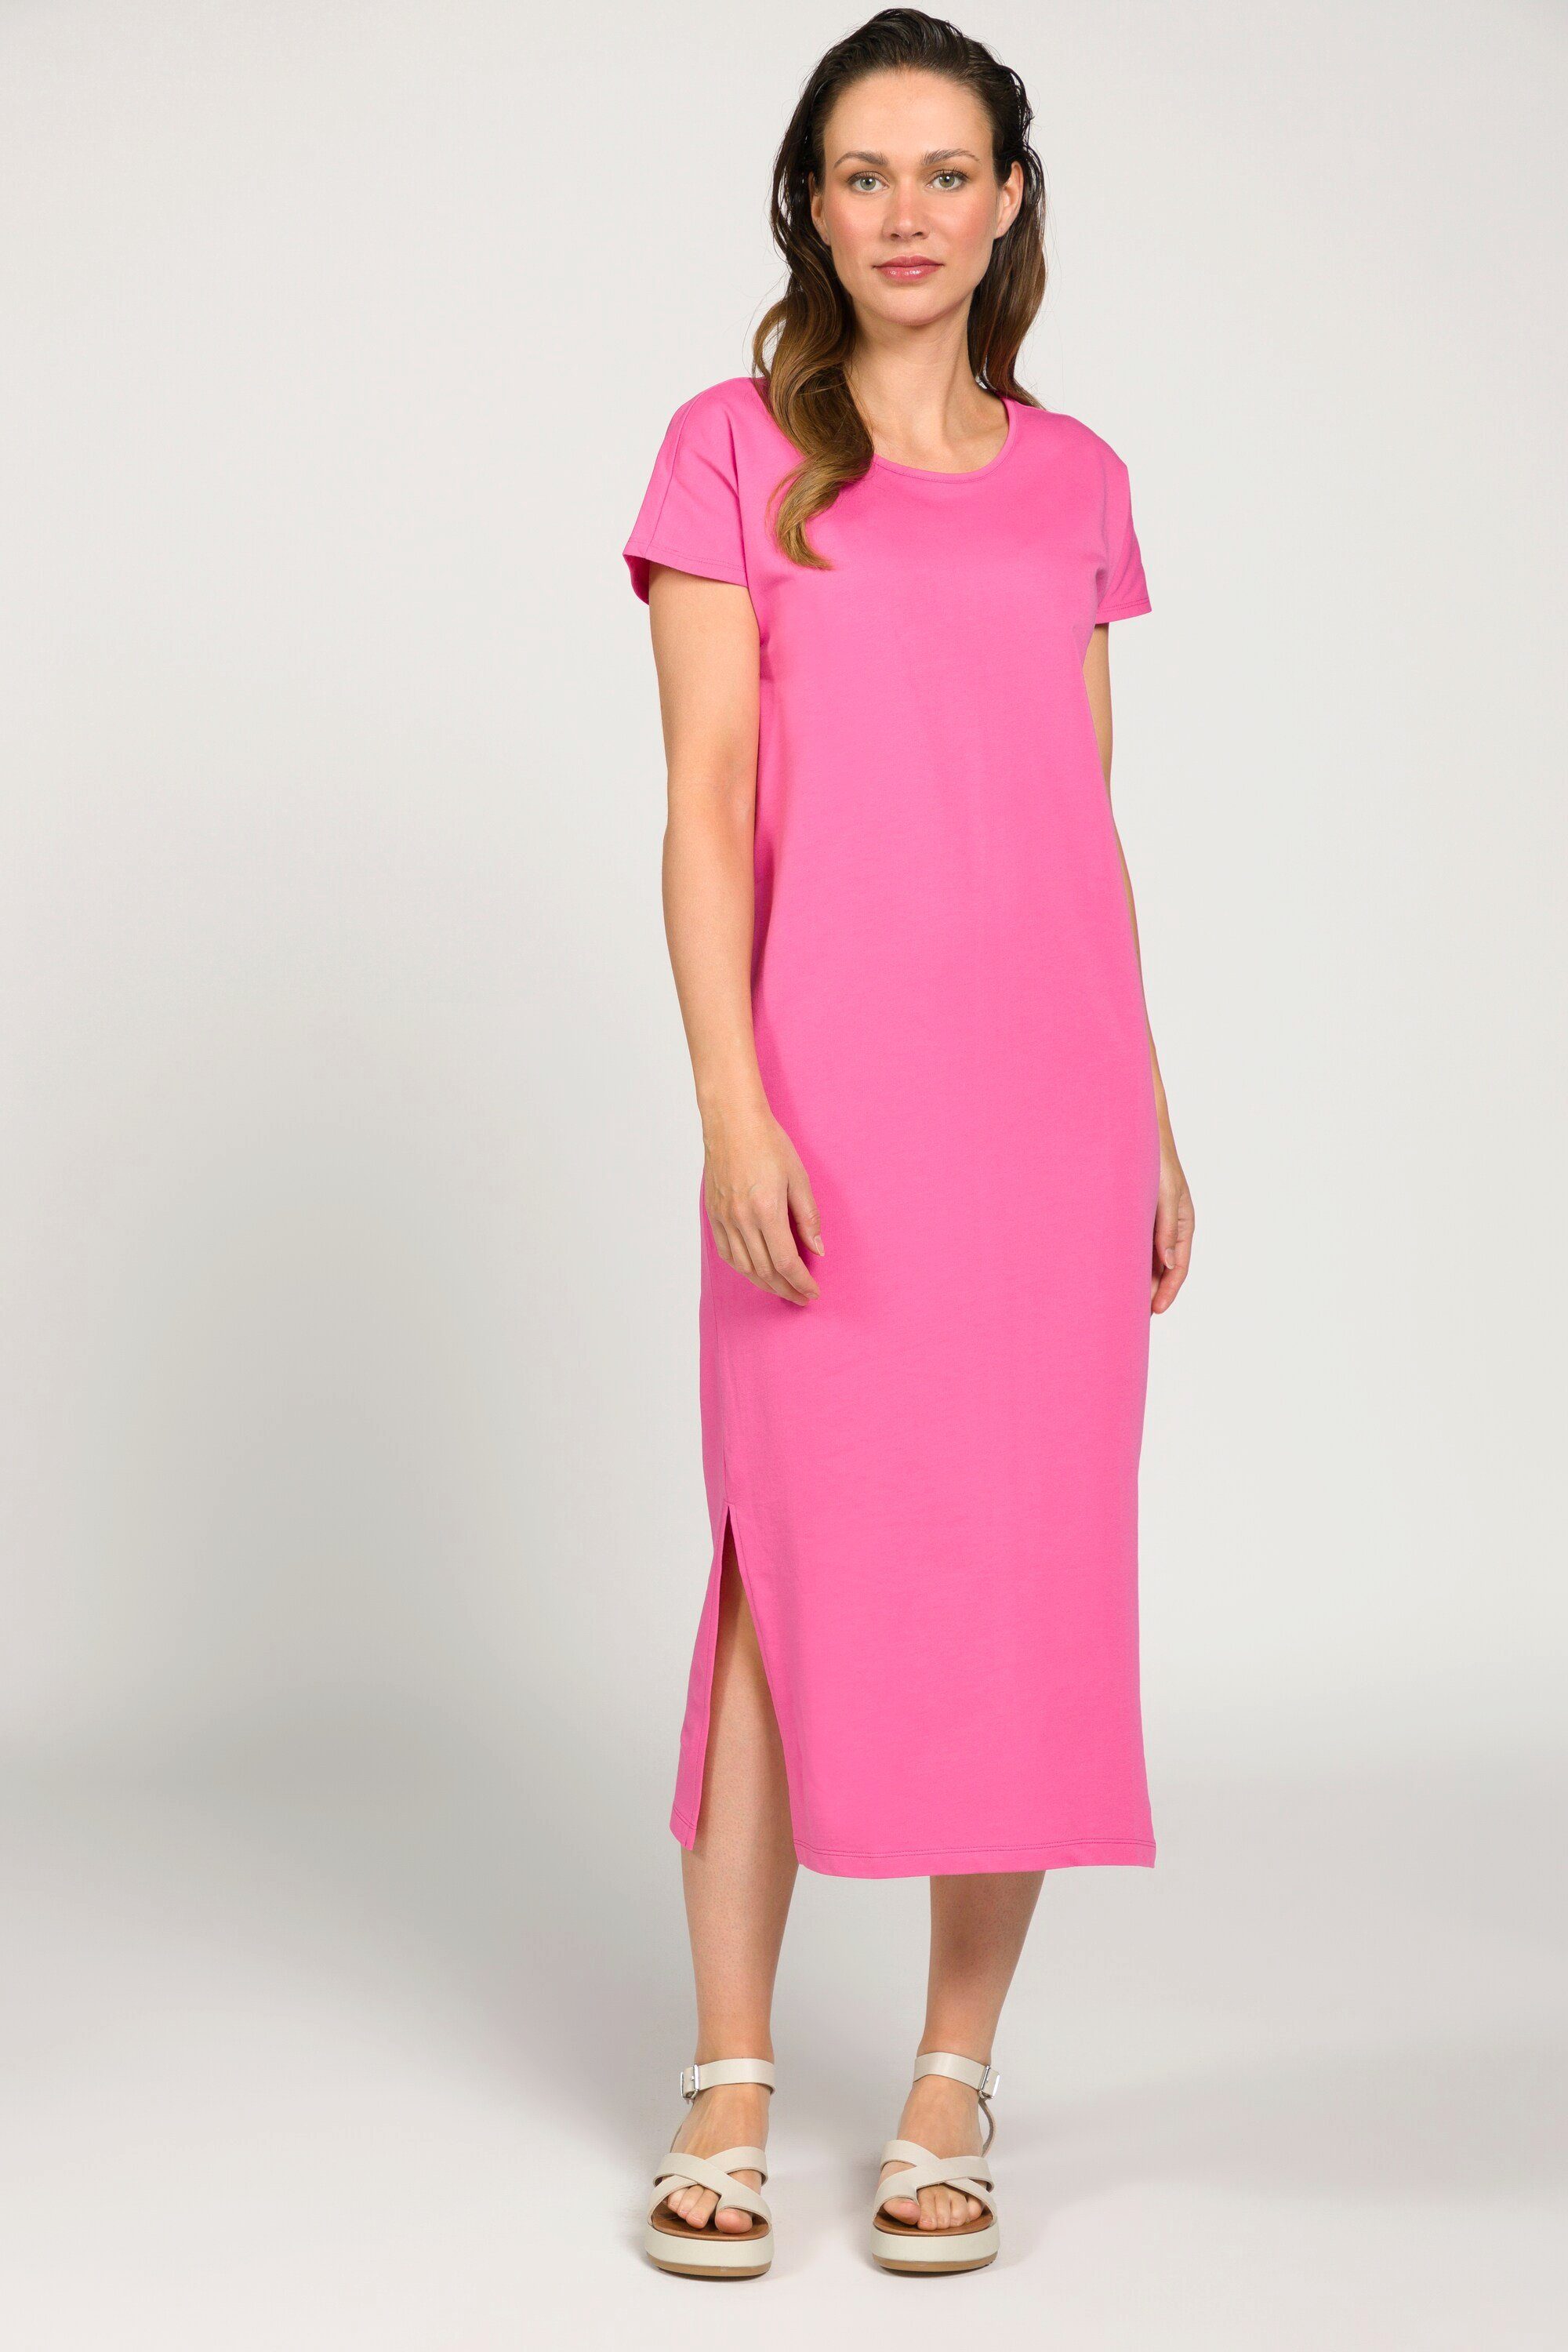 Gina Laura Jerseykleid Kleid Jersey Rundhals ärmellos Seitenschlitze pink